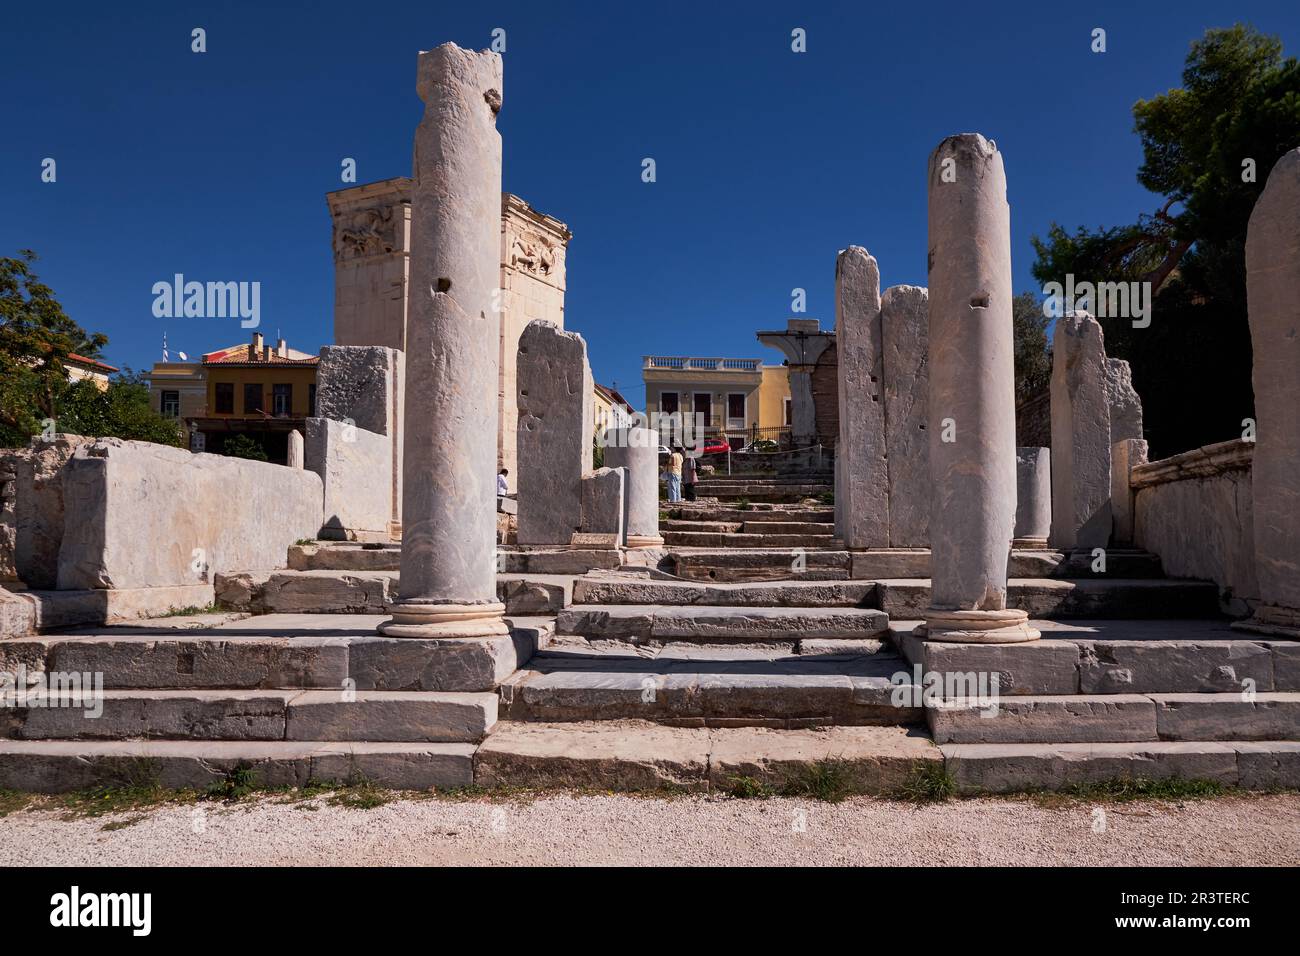 Les ruines de l'agora romaine - Athènes, Grèce Banque D'Images